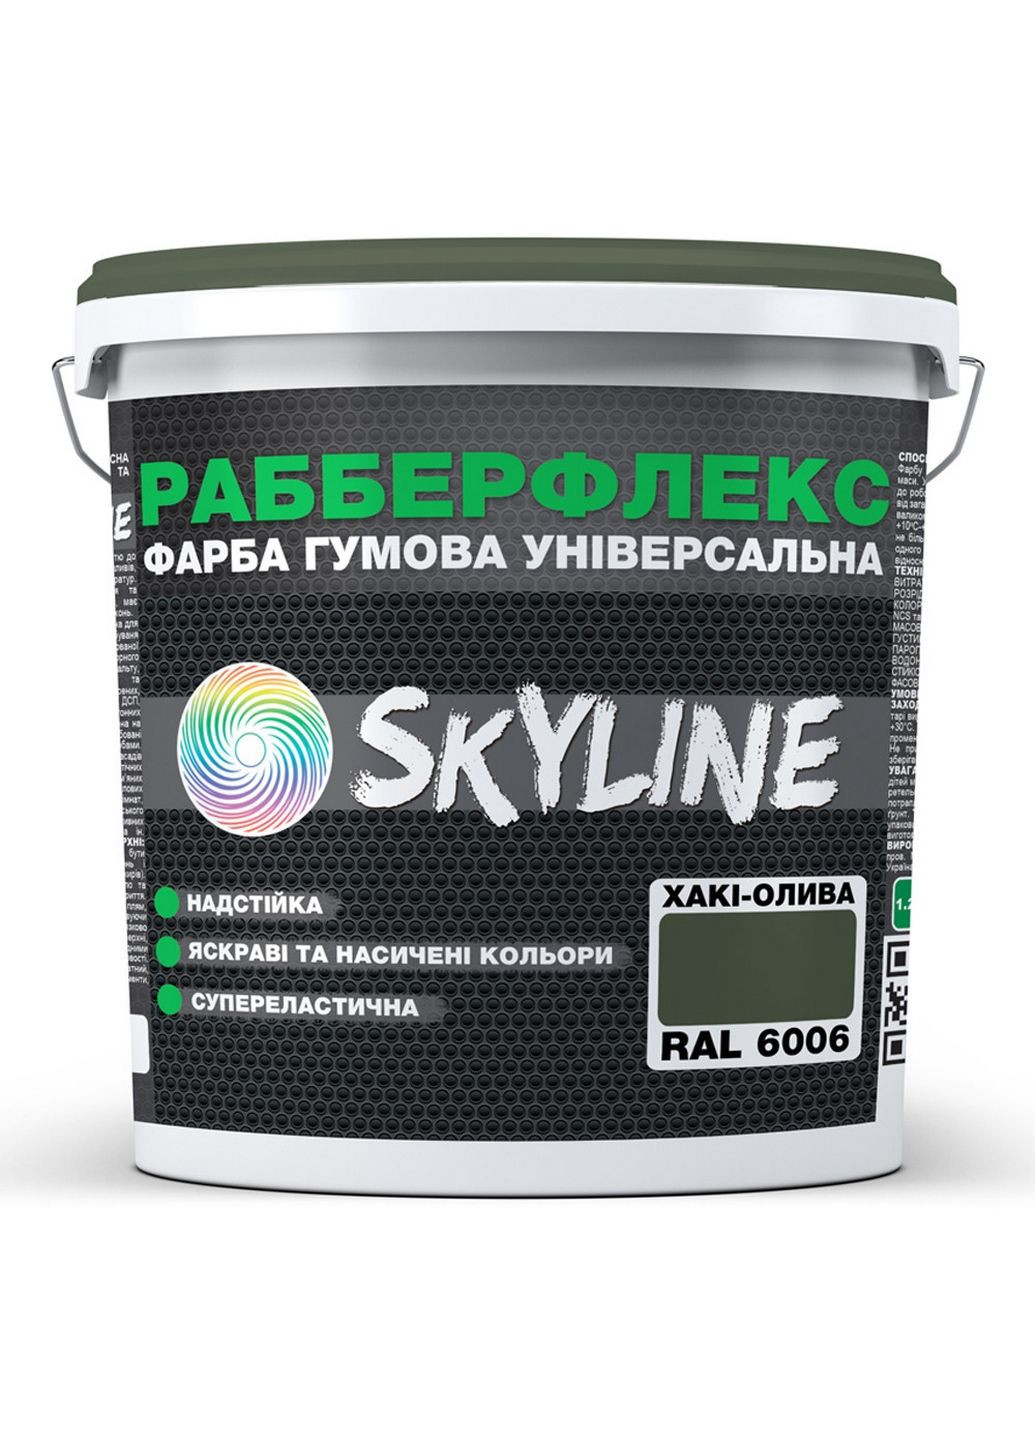 Надстійка фарба гумова супереластична «РабберФлекс» 3,6 кг SkyLine (289368622)